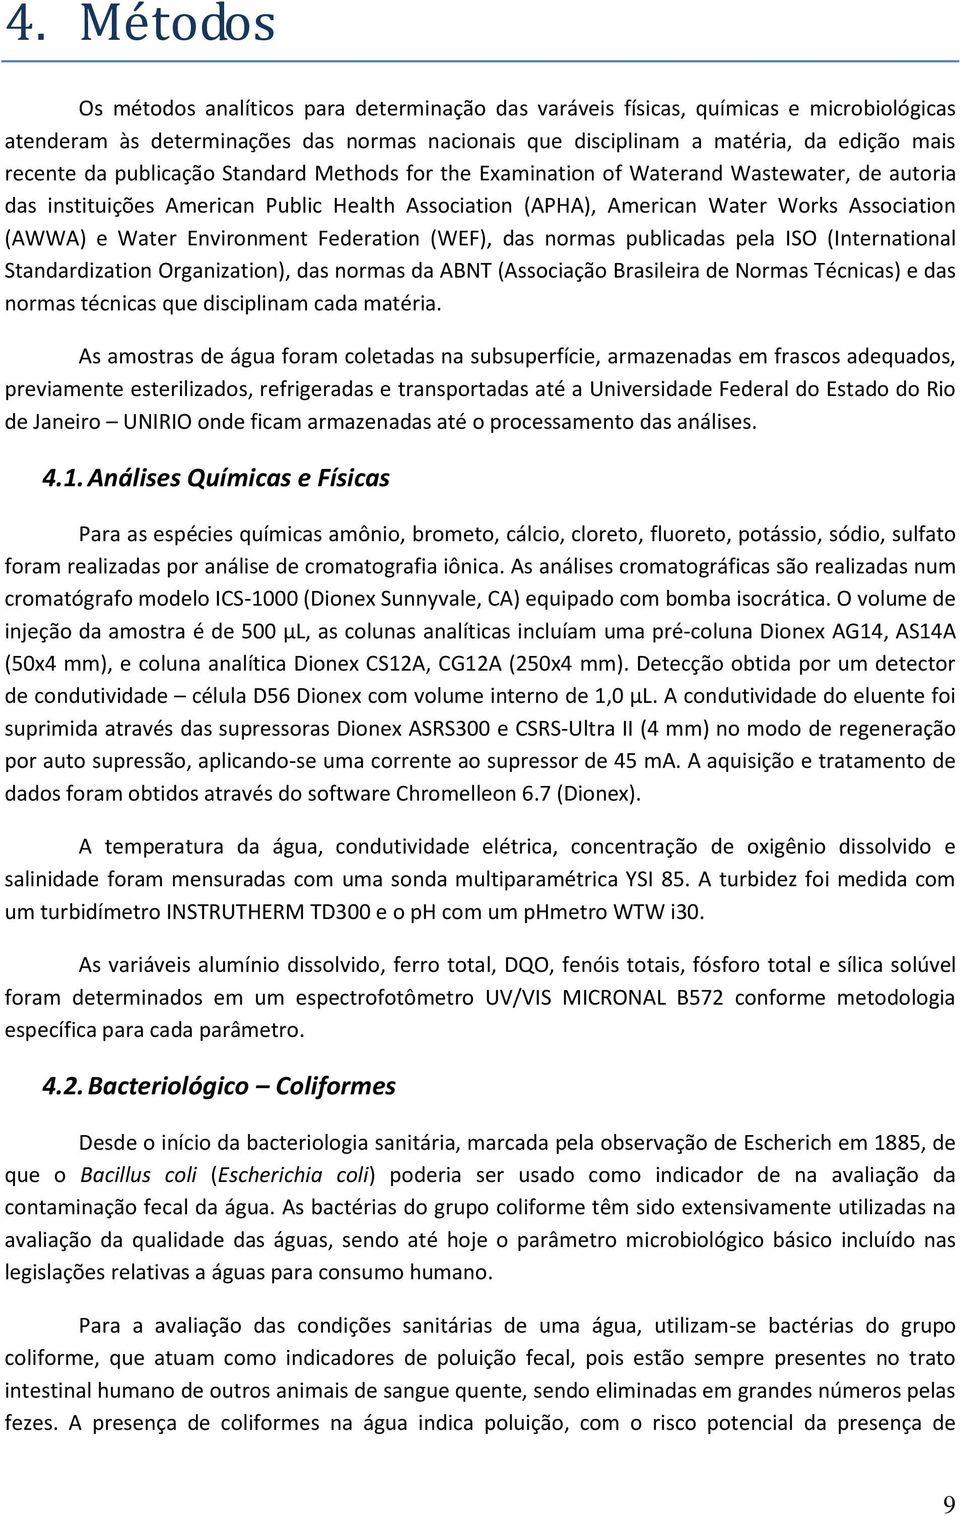 Environment Federation (WEF), das normas publicadas pela ISO (International Standardization Organization), das normas da ABNT (Associação Brasileira de Normas Técnicas) e das normas técnicas que